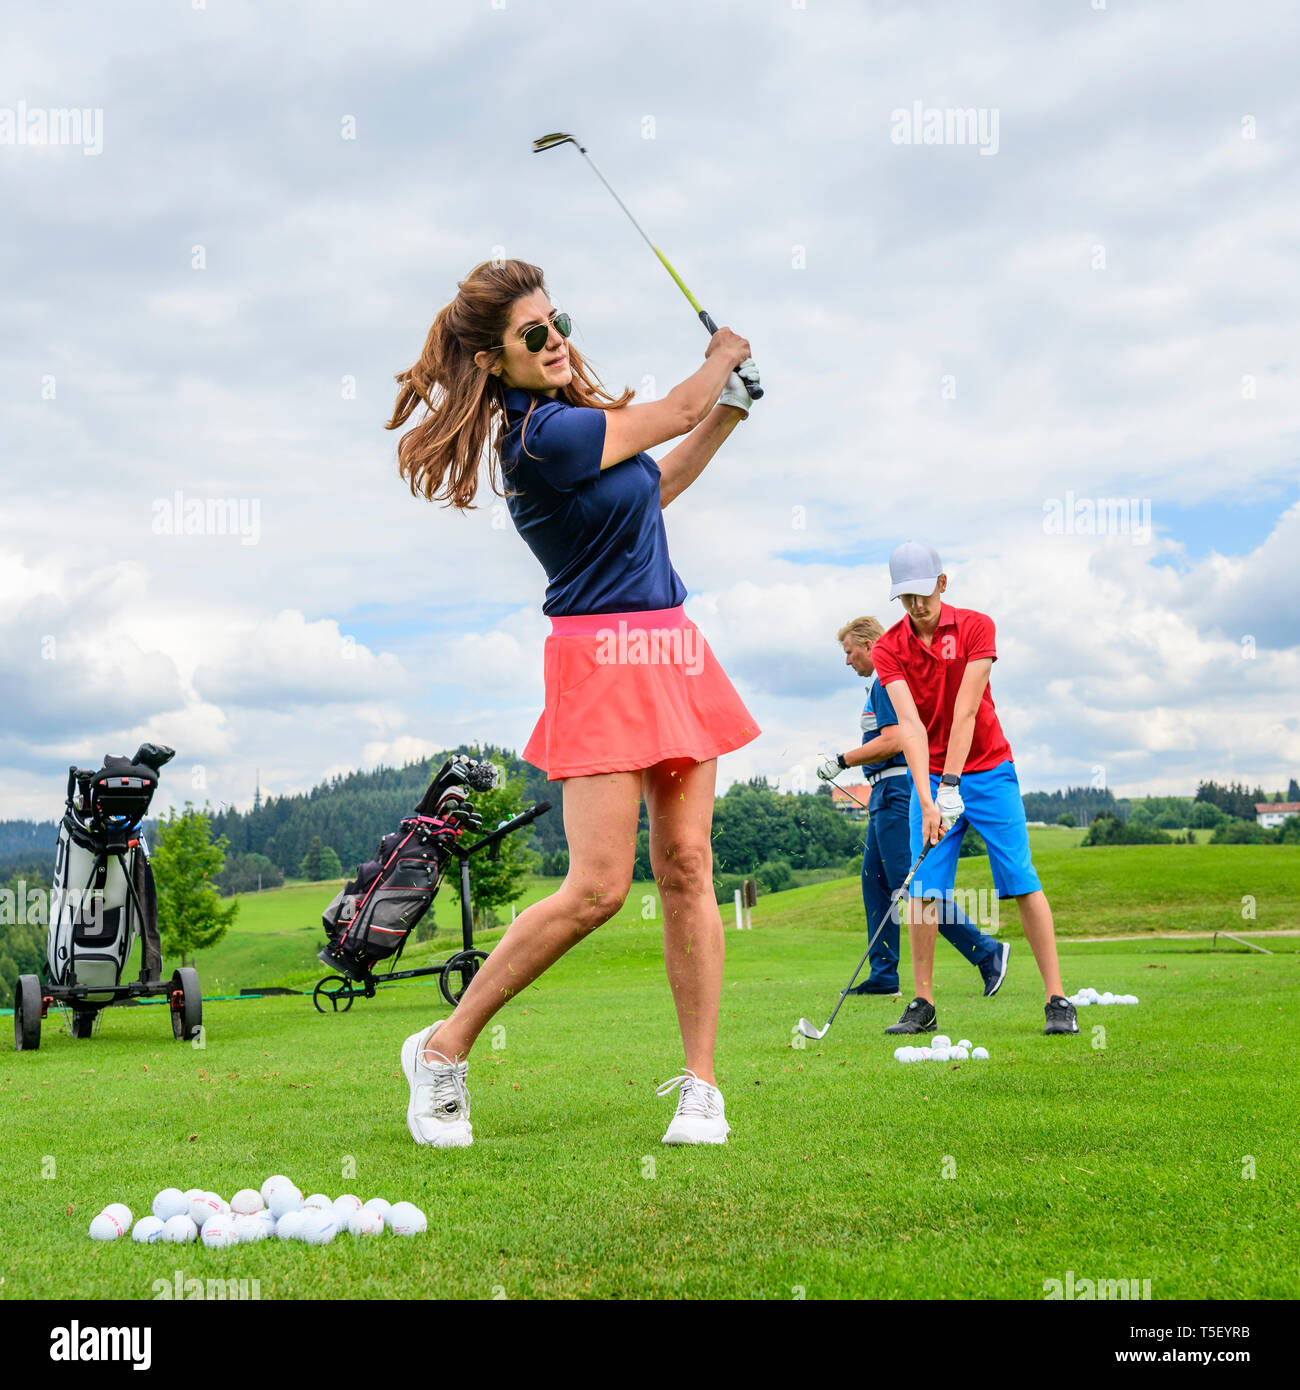 Los jugadores de golf practicar en drivingrange Foto de stock